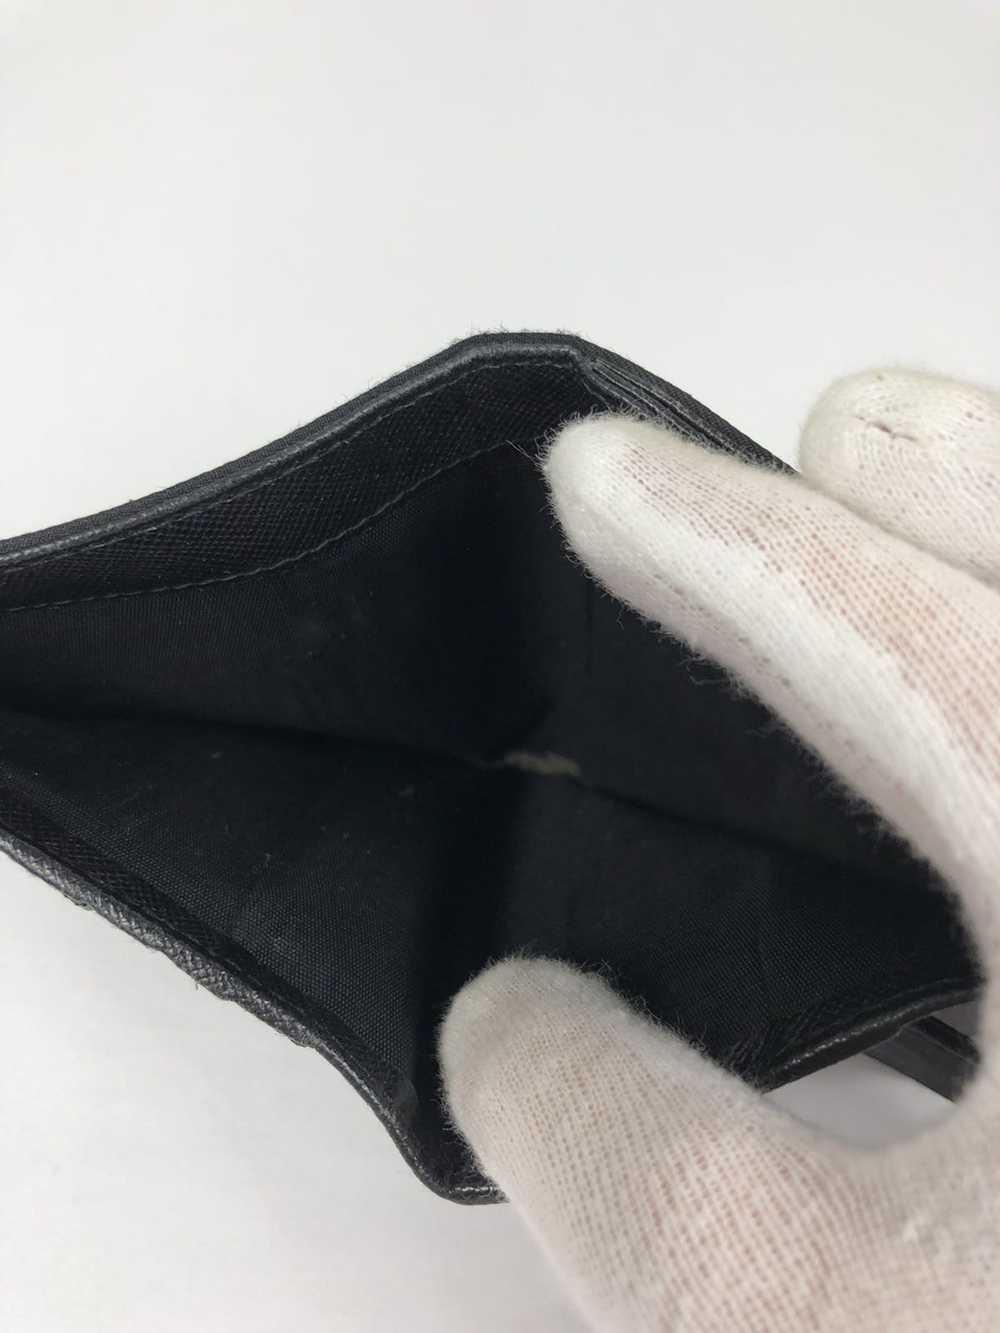 Prada Prada tessuto nero nylon bifold wallet - image 3